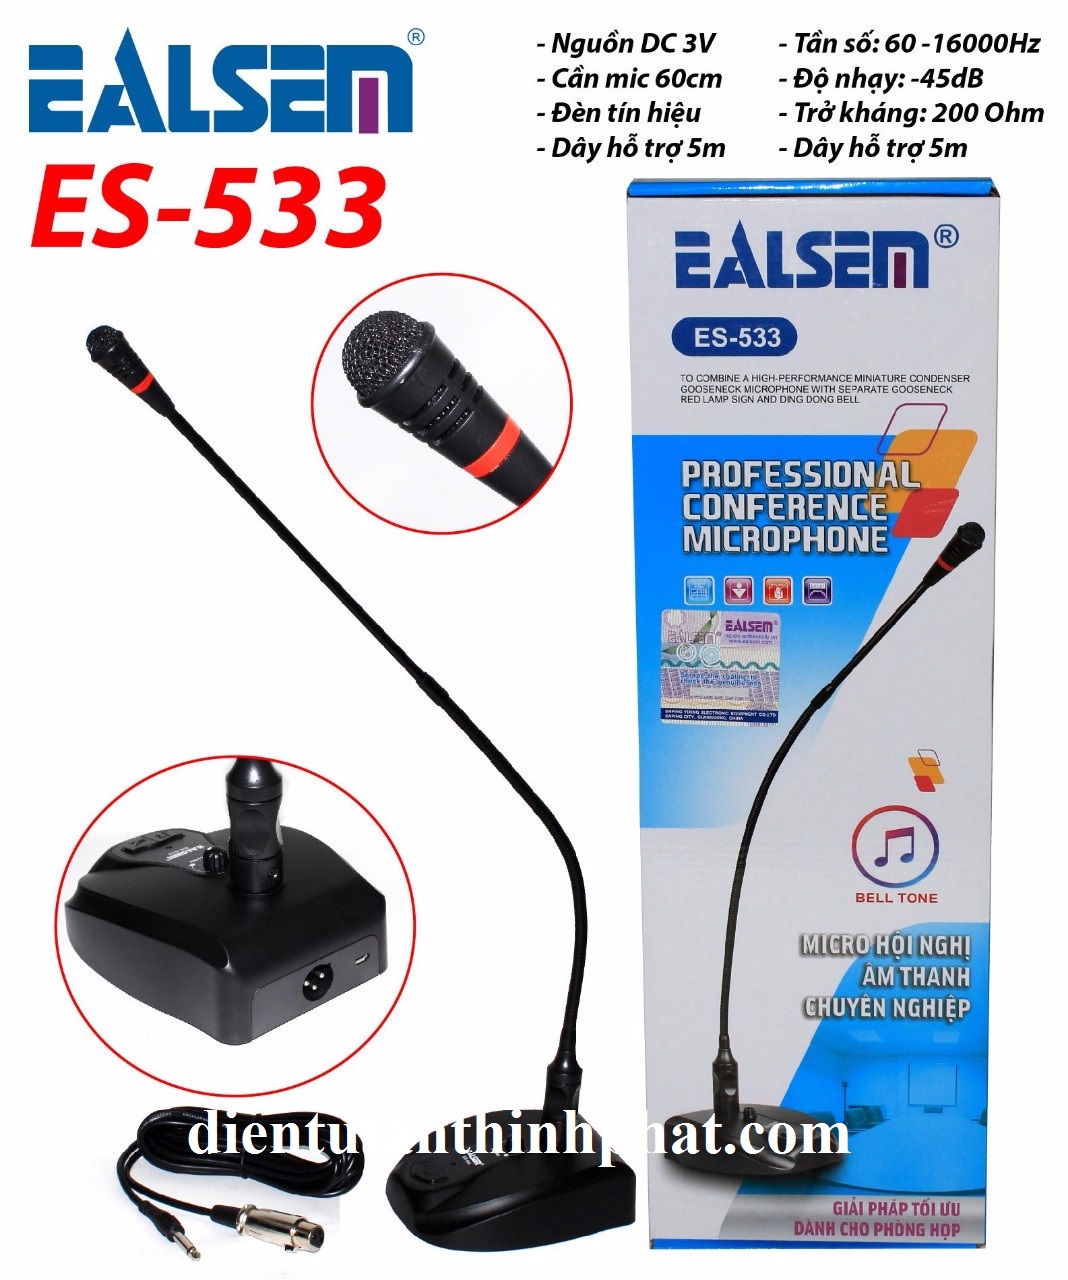 Micro hội nghị ealsem es-533 âm thanh chuyên nghiệp